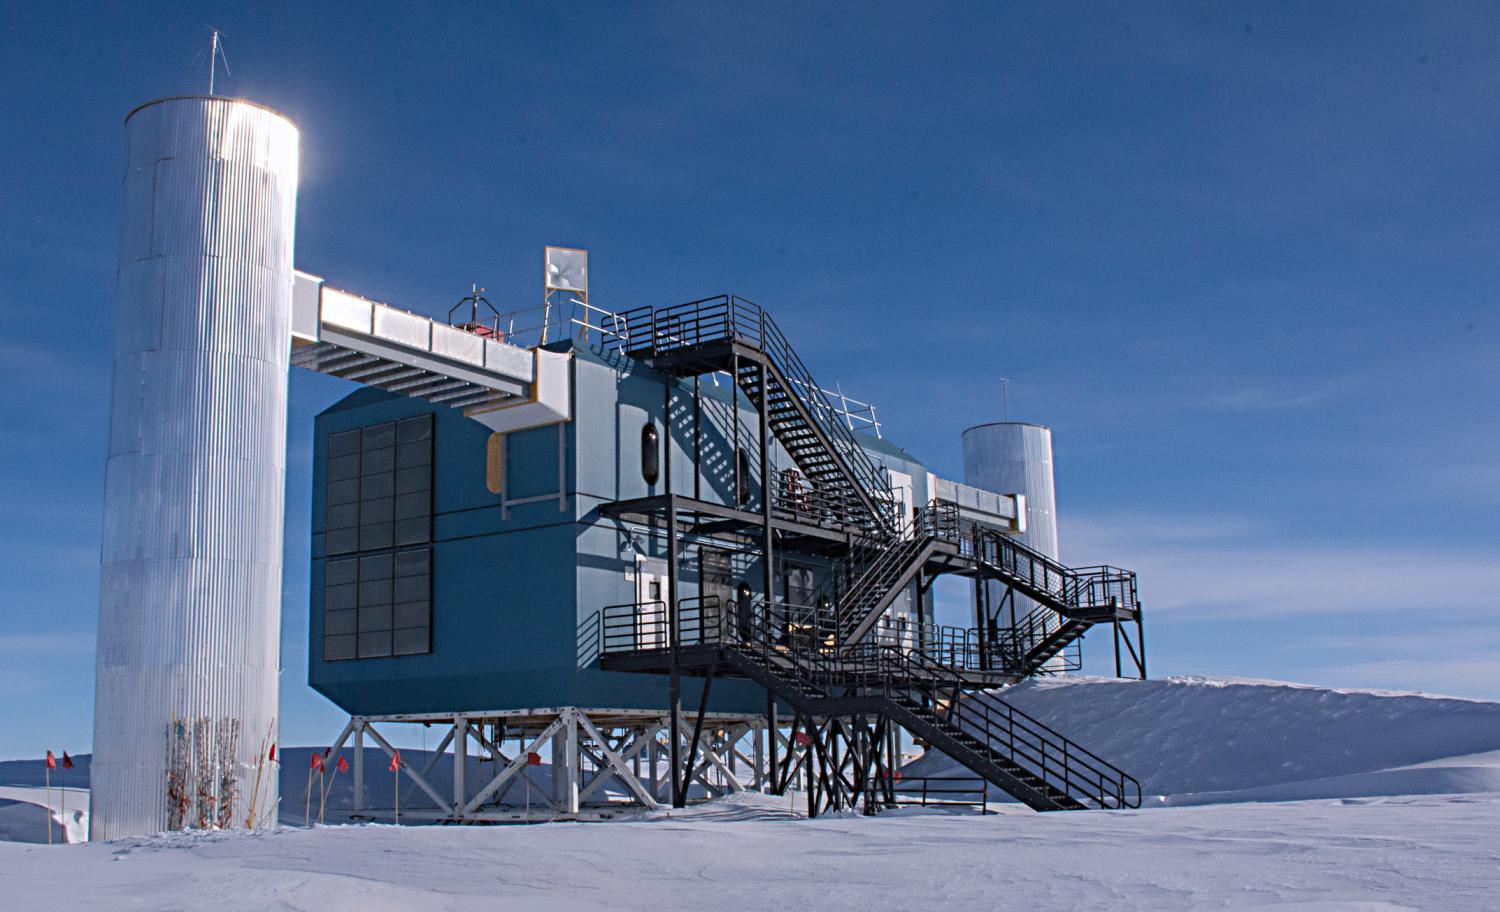 IceCube observatory